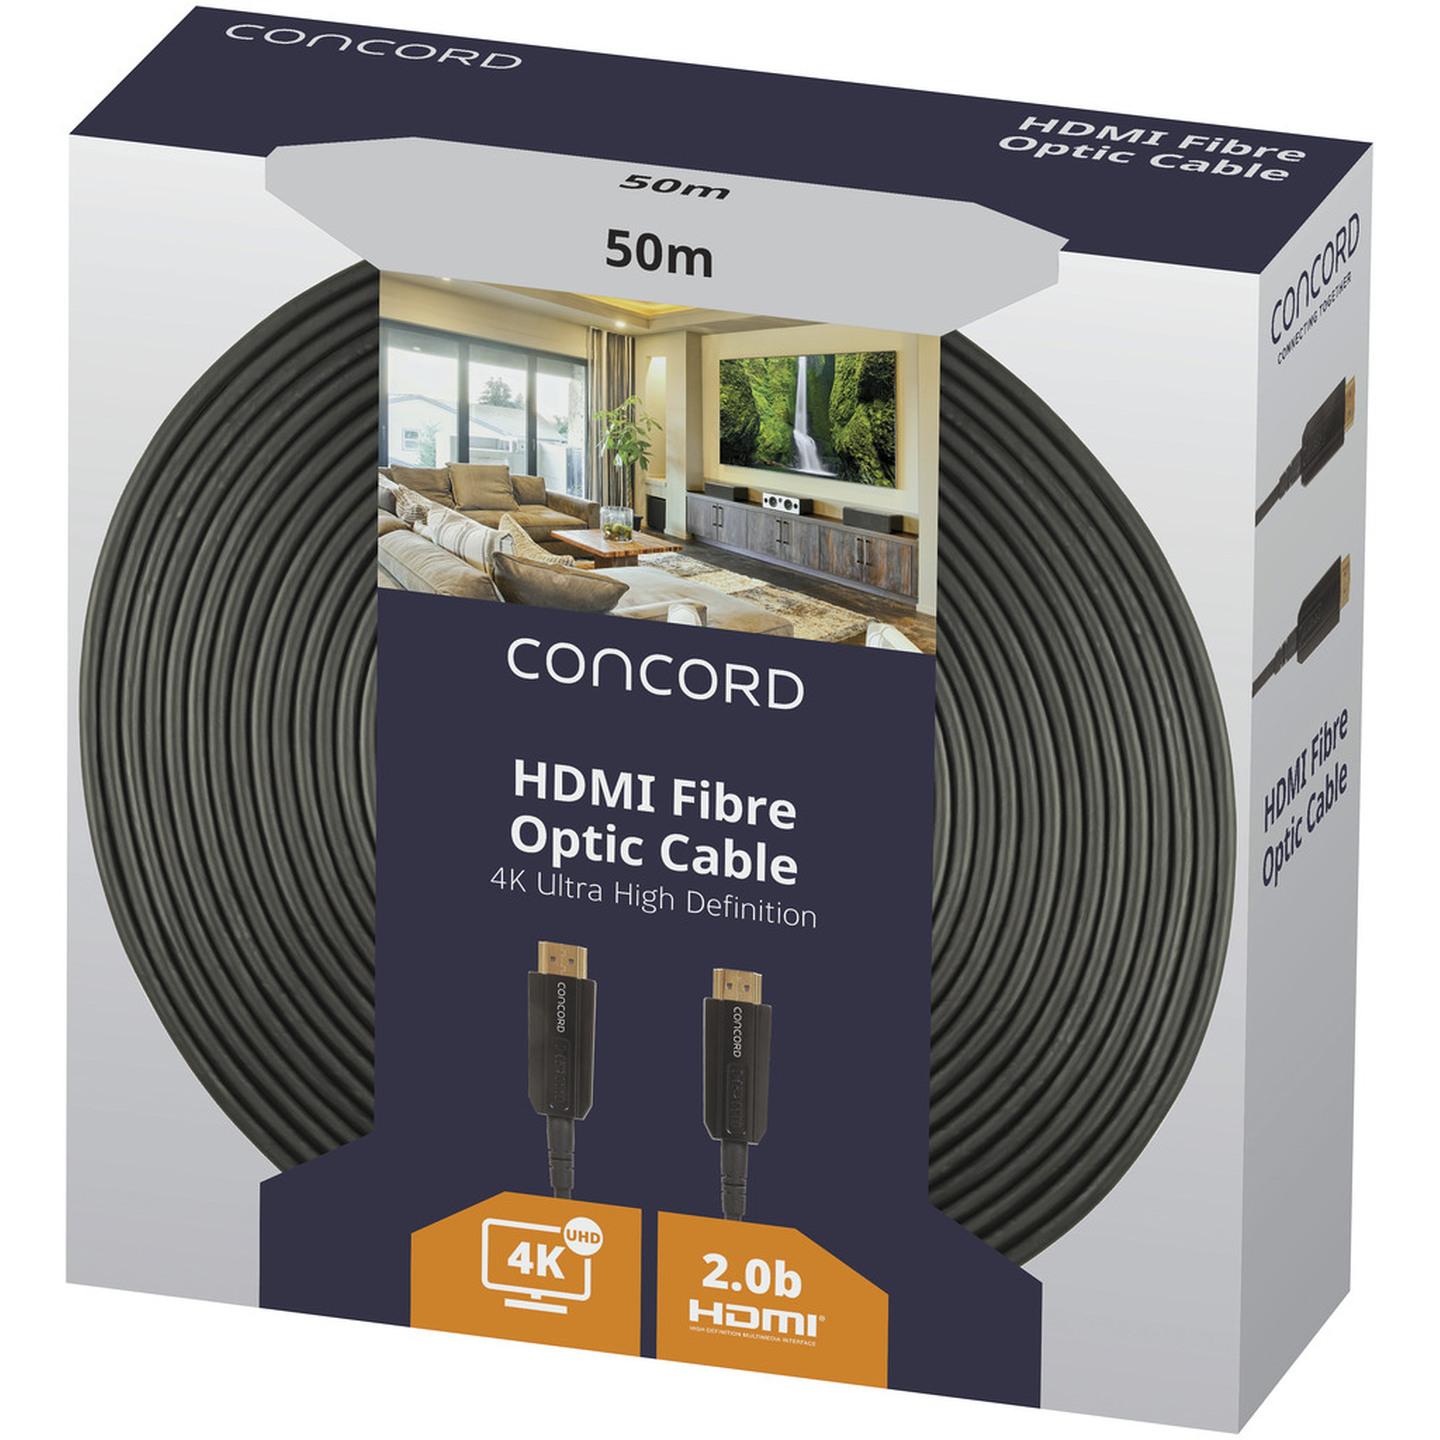 Concord 50m 4K HDMI Fibre Optic Cable